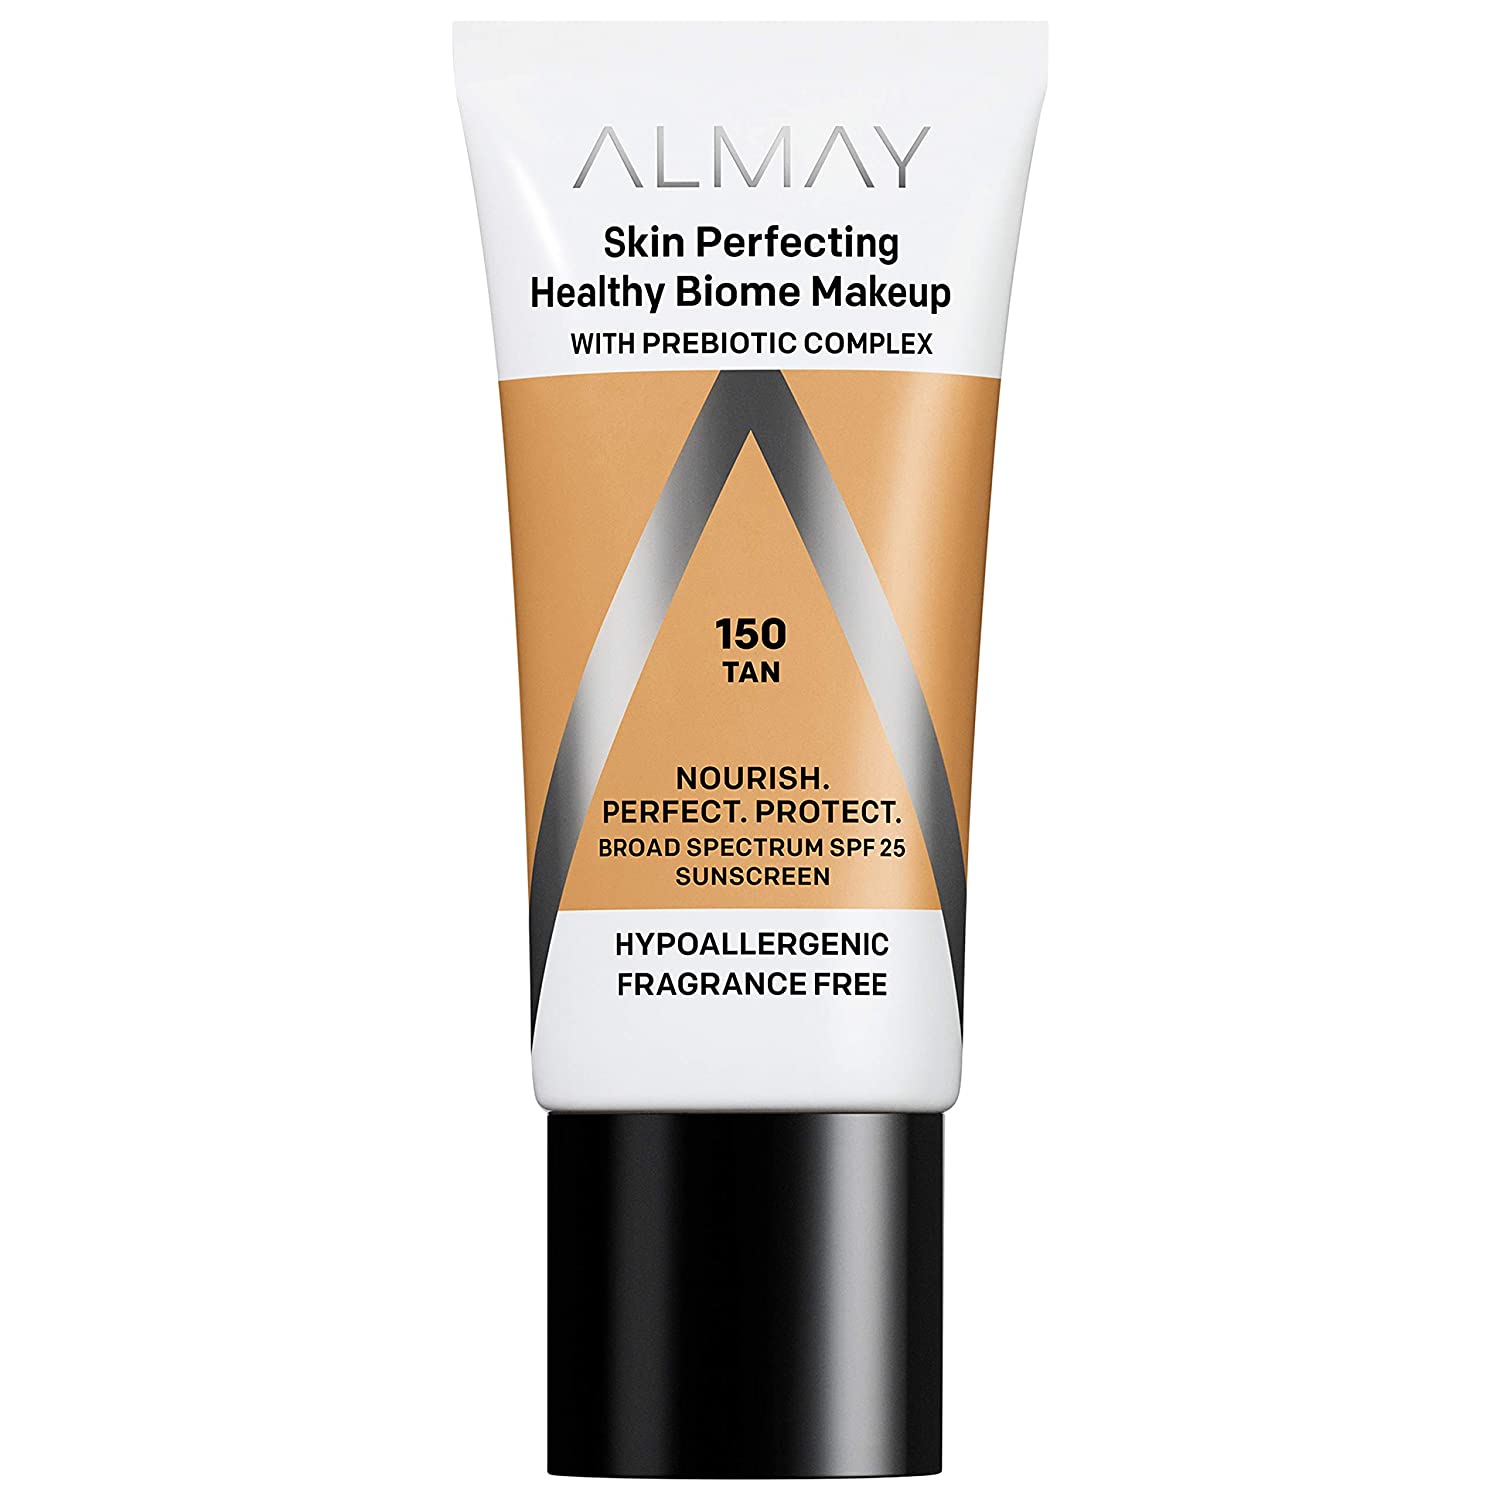 Almay Skin Perfecting Healthy Biome Makeup SPF 25 150 Tan